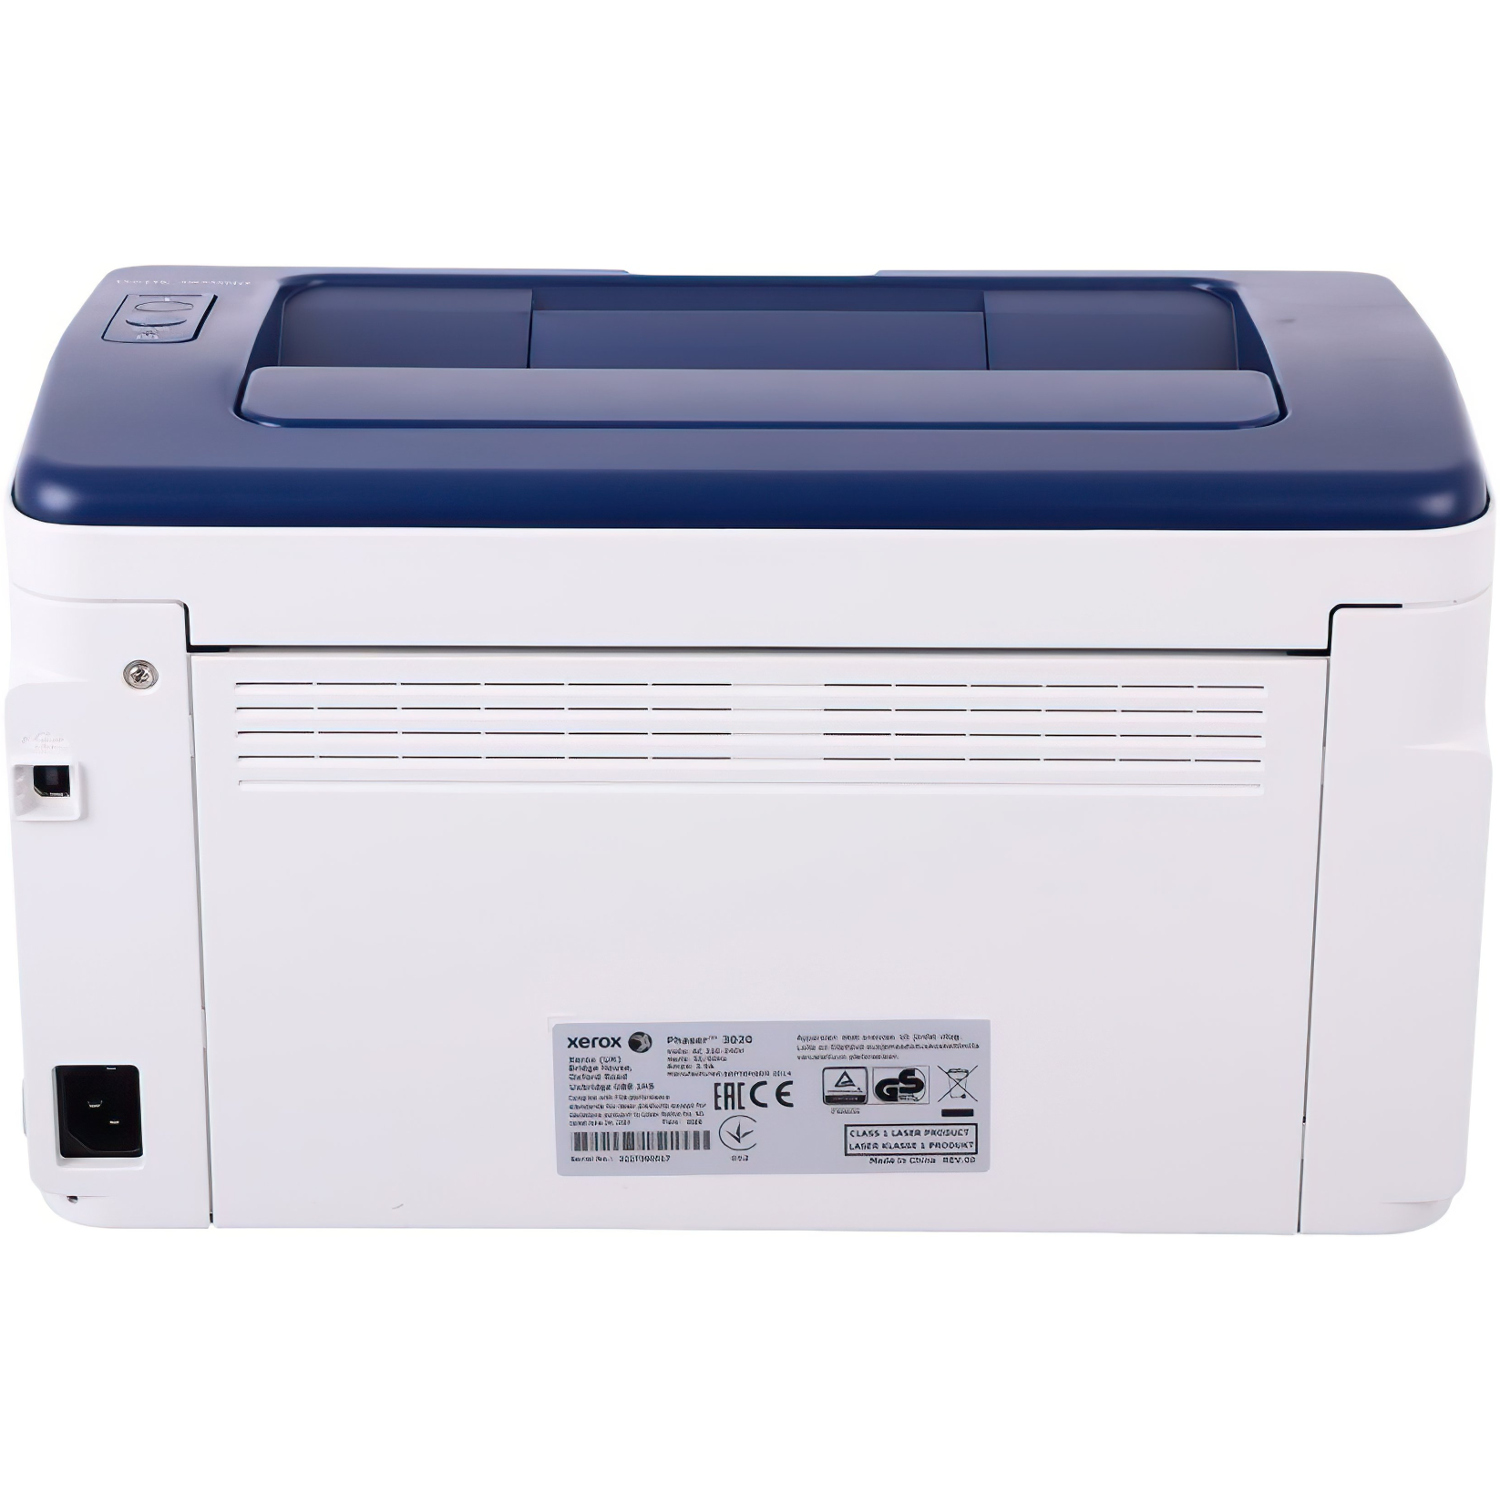 Лазерный принтер максимальное разрешение. Xerox Phaser 3020bi. Лазерный Xerox Phaser 3020. Принтер Xerox Phaser 3020. Принтер Xerox Printer Phaser 3020bi.